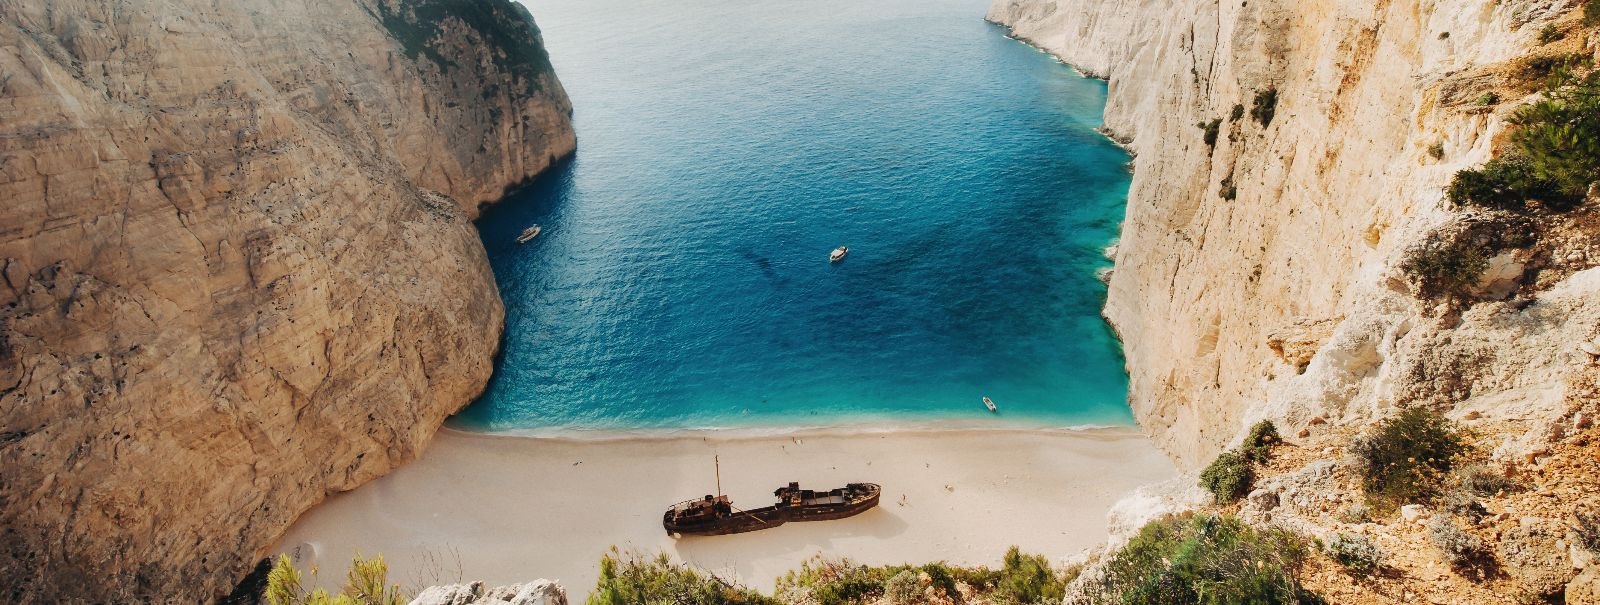 Kreeka on riik, mis on sünonüüm päikesepaisteliste randade, türkiissiniste vetega ja rikaste ajalooliste paikadega. Kuigi paljud reisijad kogunevad populaarsete